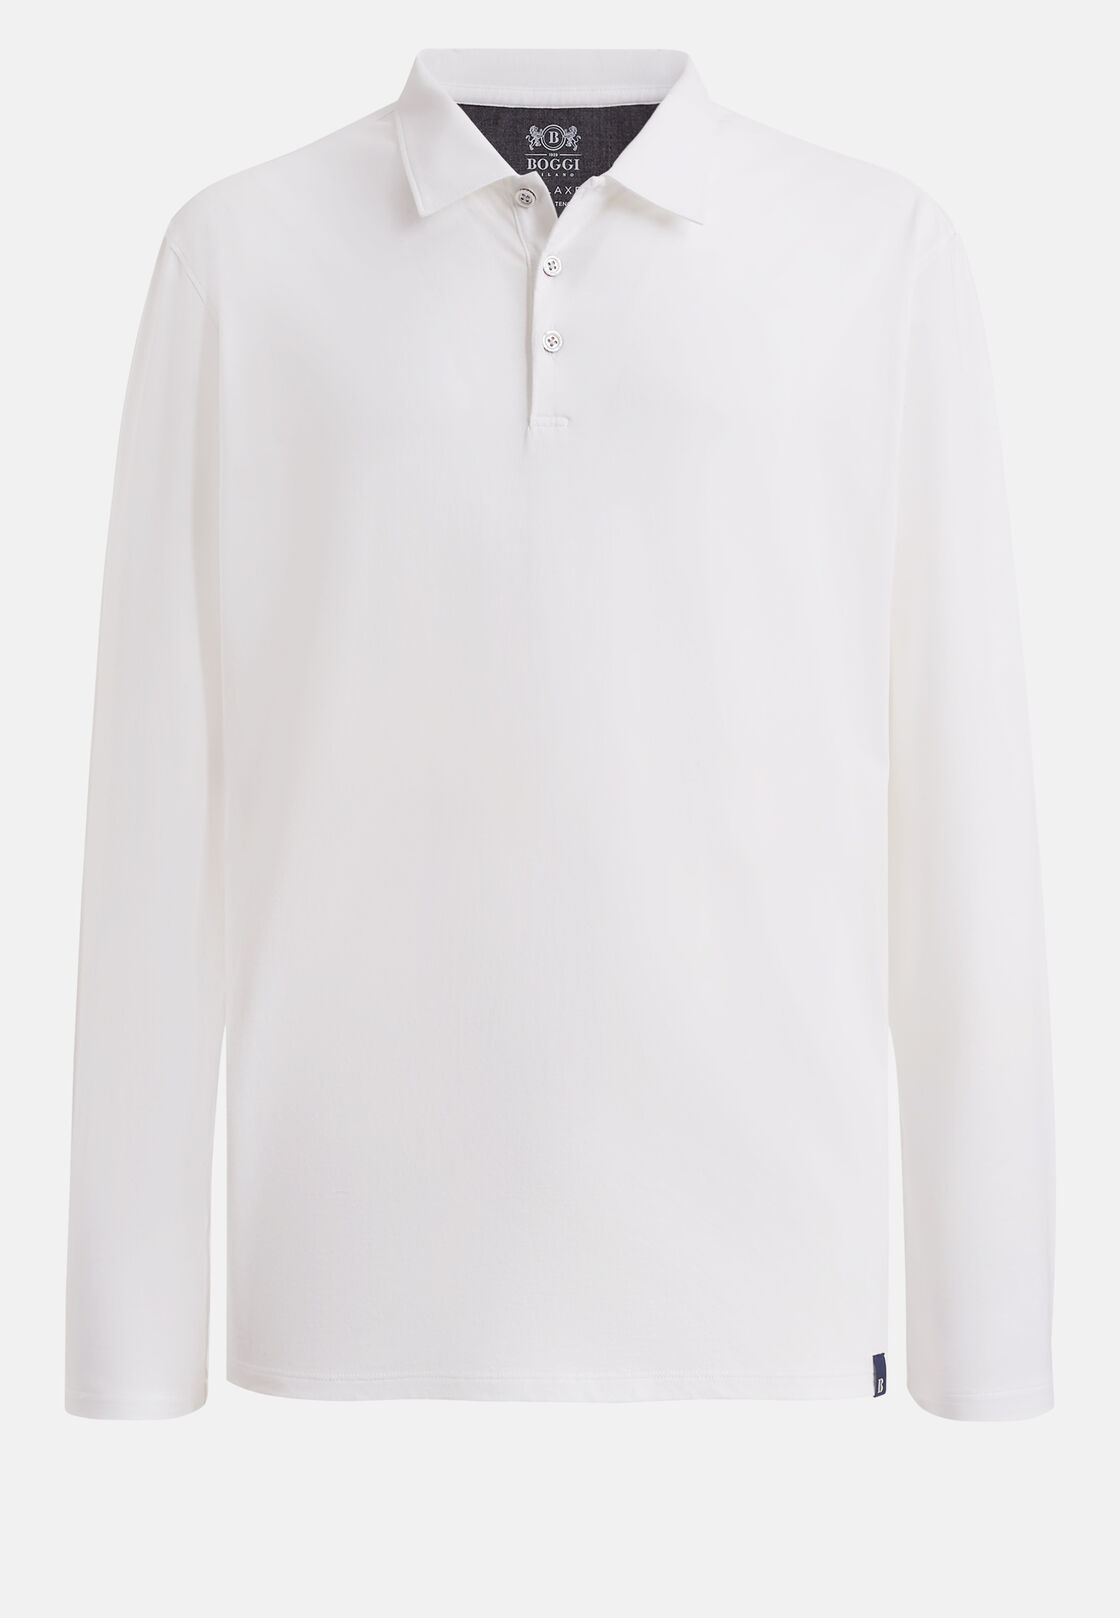 Poloshirt aus baumwolle und tencel regular fit lange ärmel, Weiß, hi-res